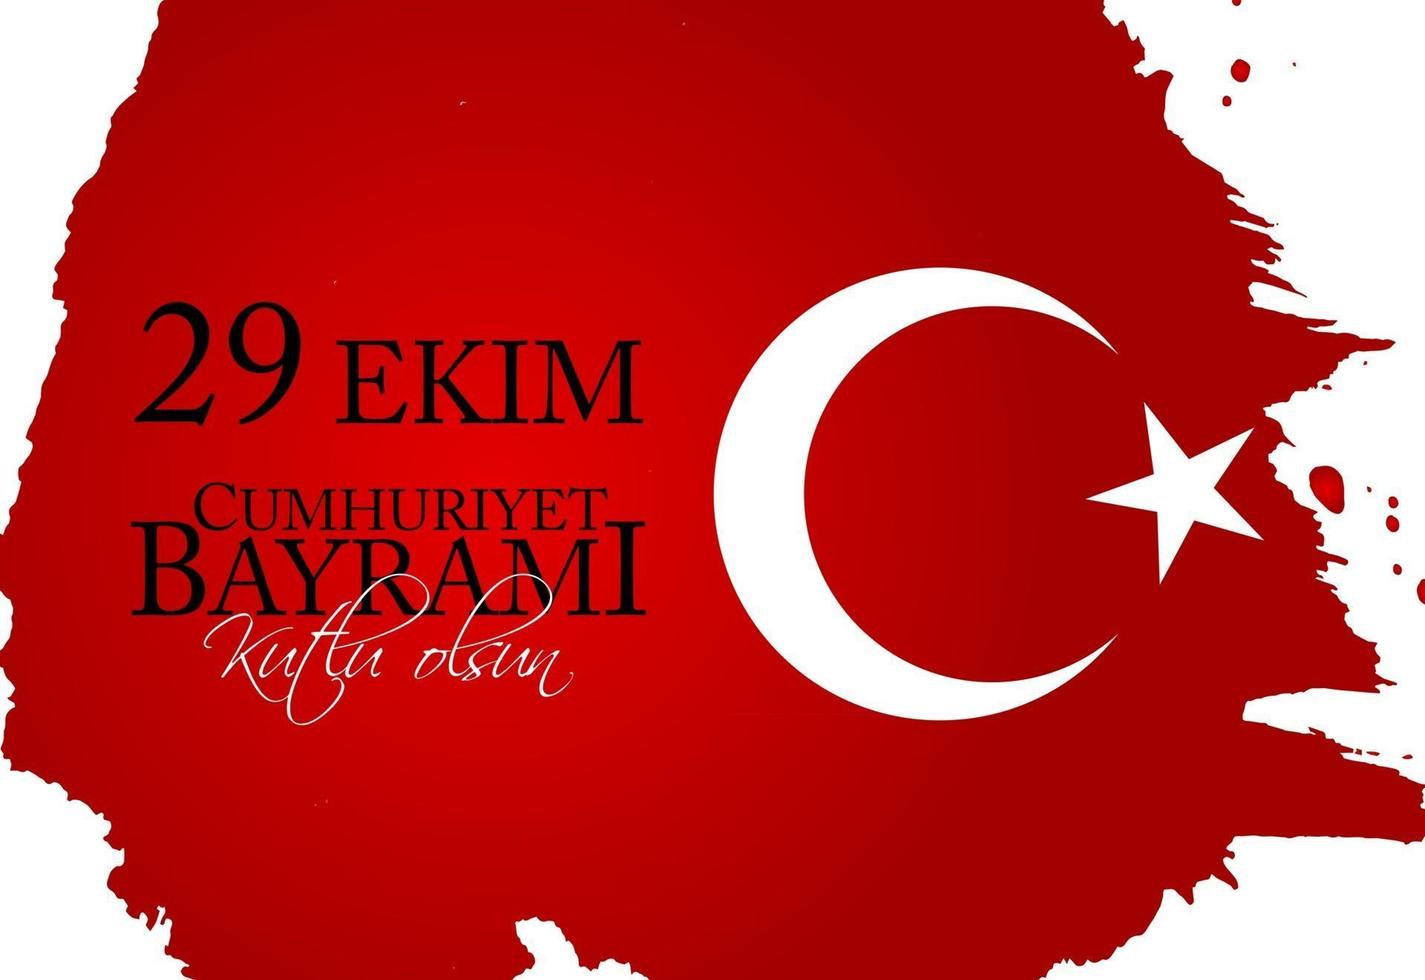 29 ekim cumhuriyet bayrami kutlu olsun. vertaling 29 oktober republiek dag turkije en de nationale feestdag in turkije, fijne vakantie vector